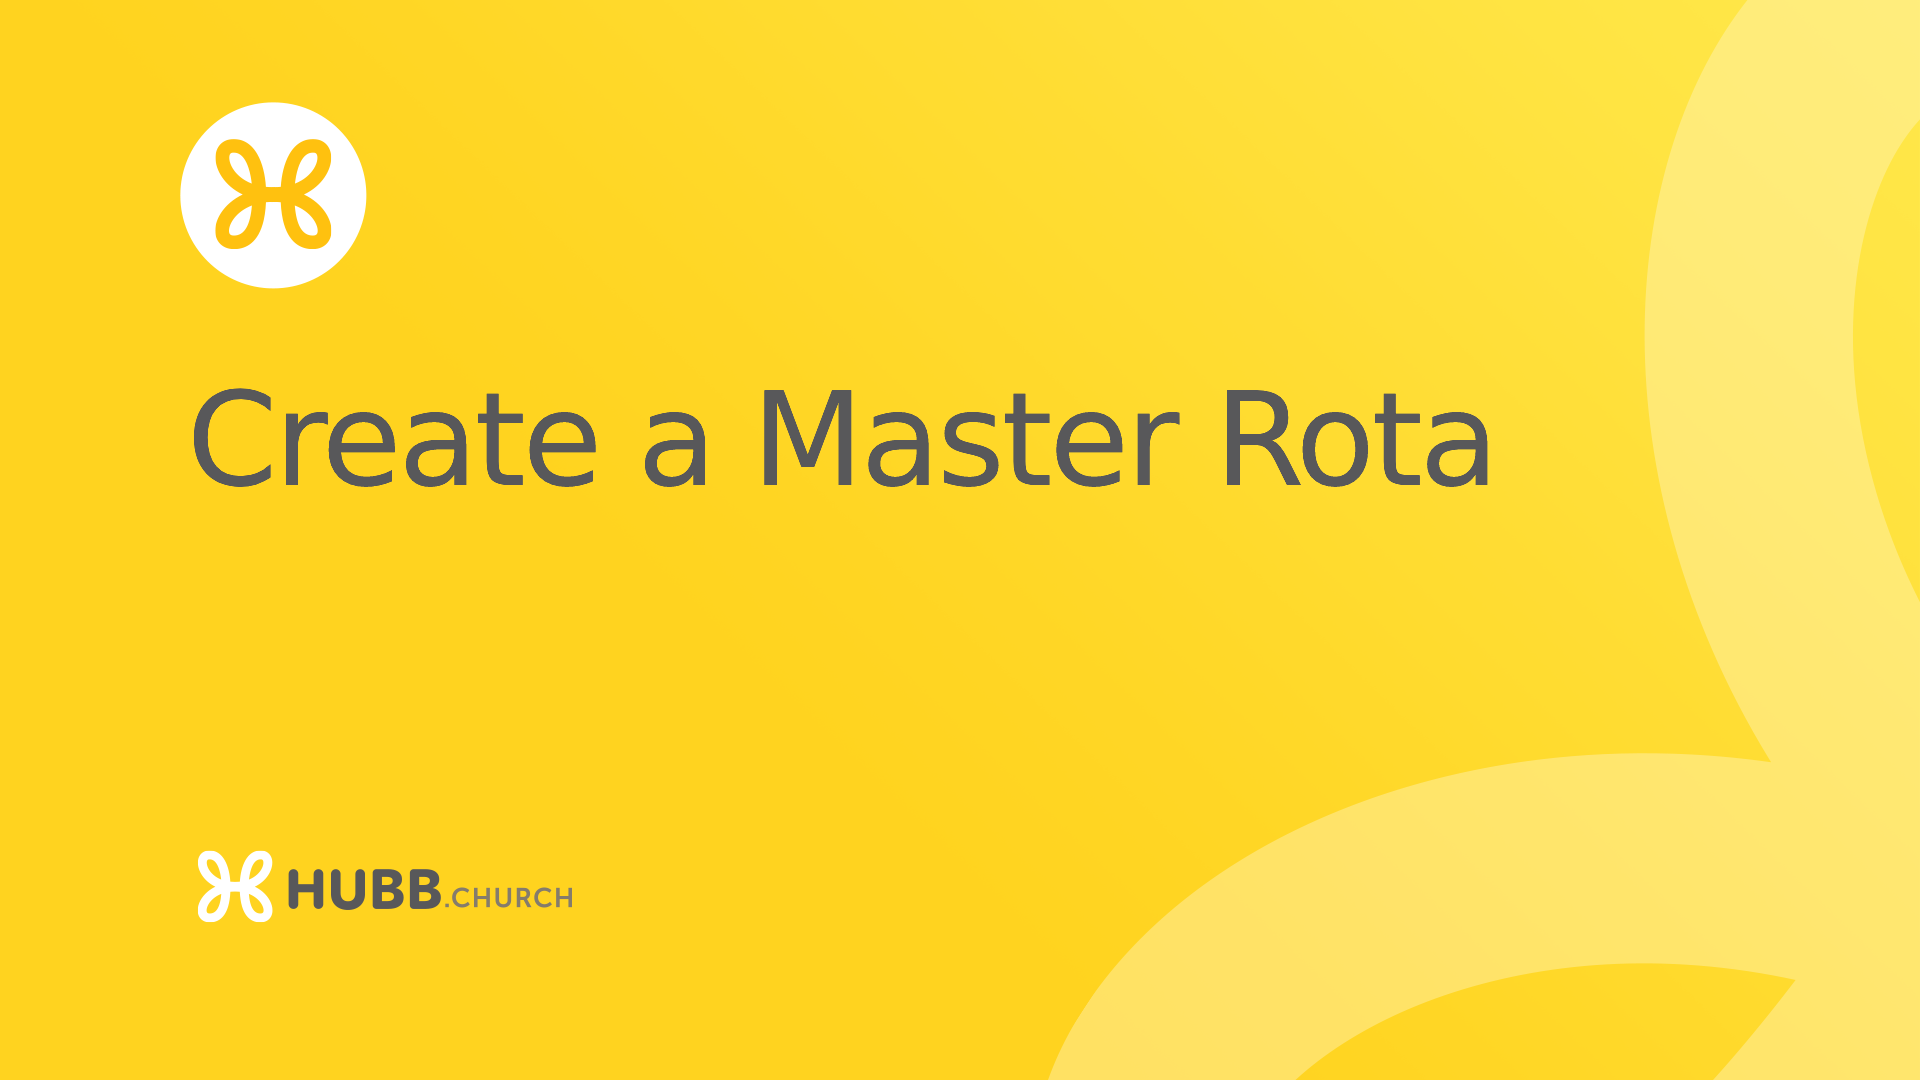 Create a master rota